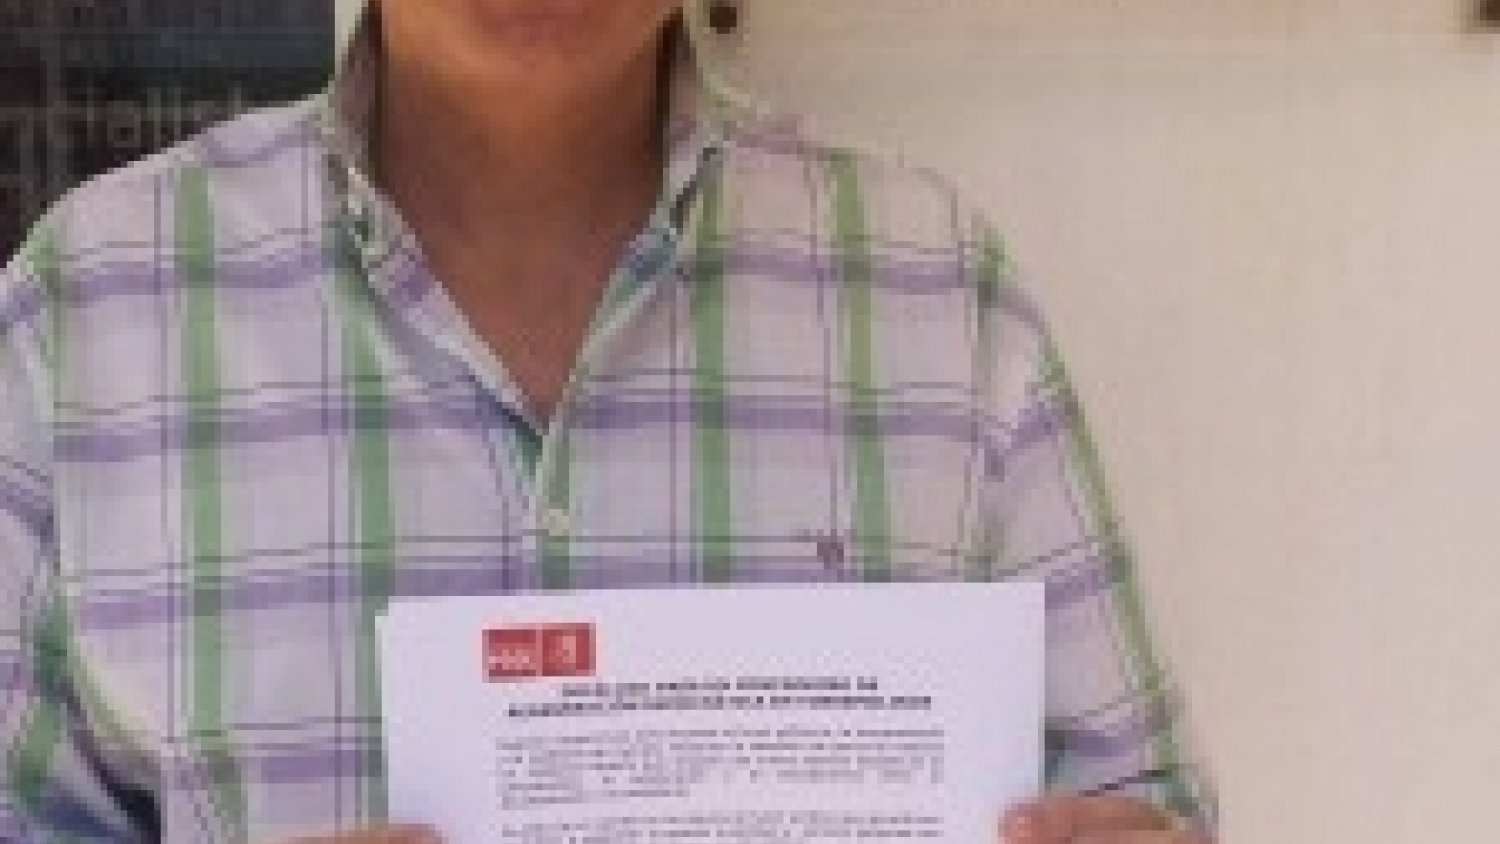 PSOE de Torremolinos ve factible el documento de C's pero afirma que 